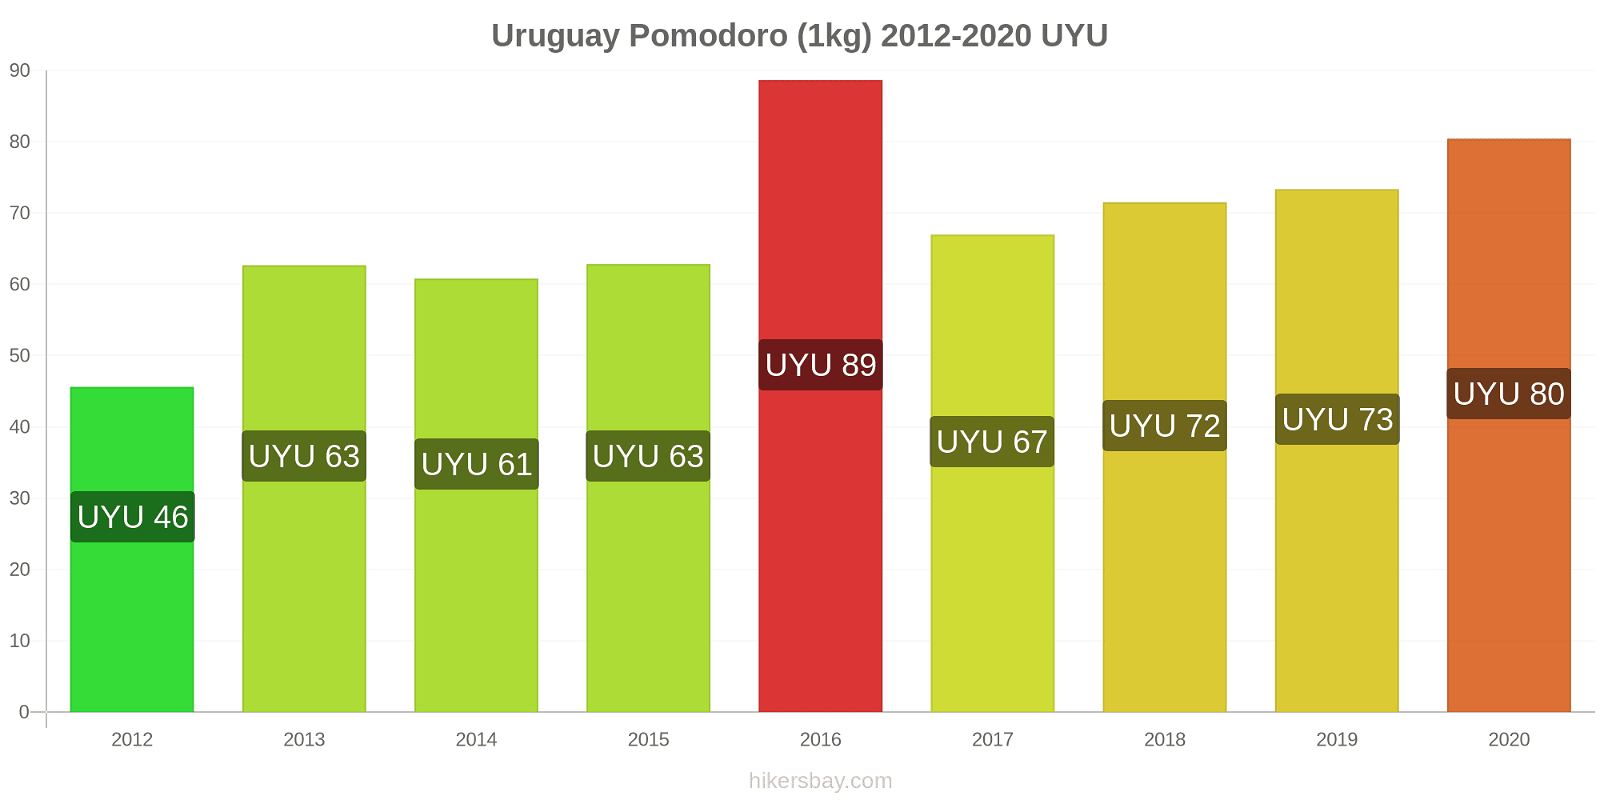 Uruguay variazioni di prezzo Pomodoro (1kg) hikersbay.com